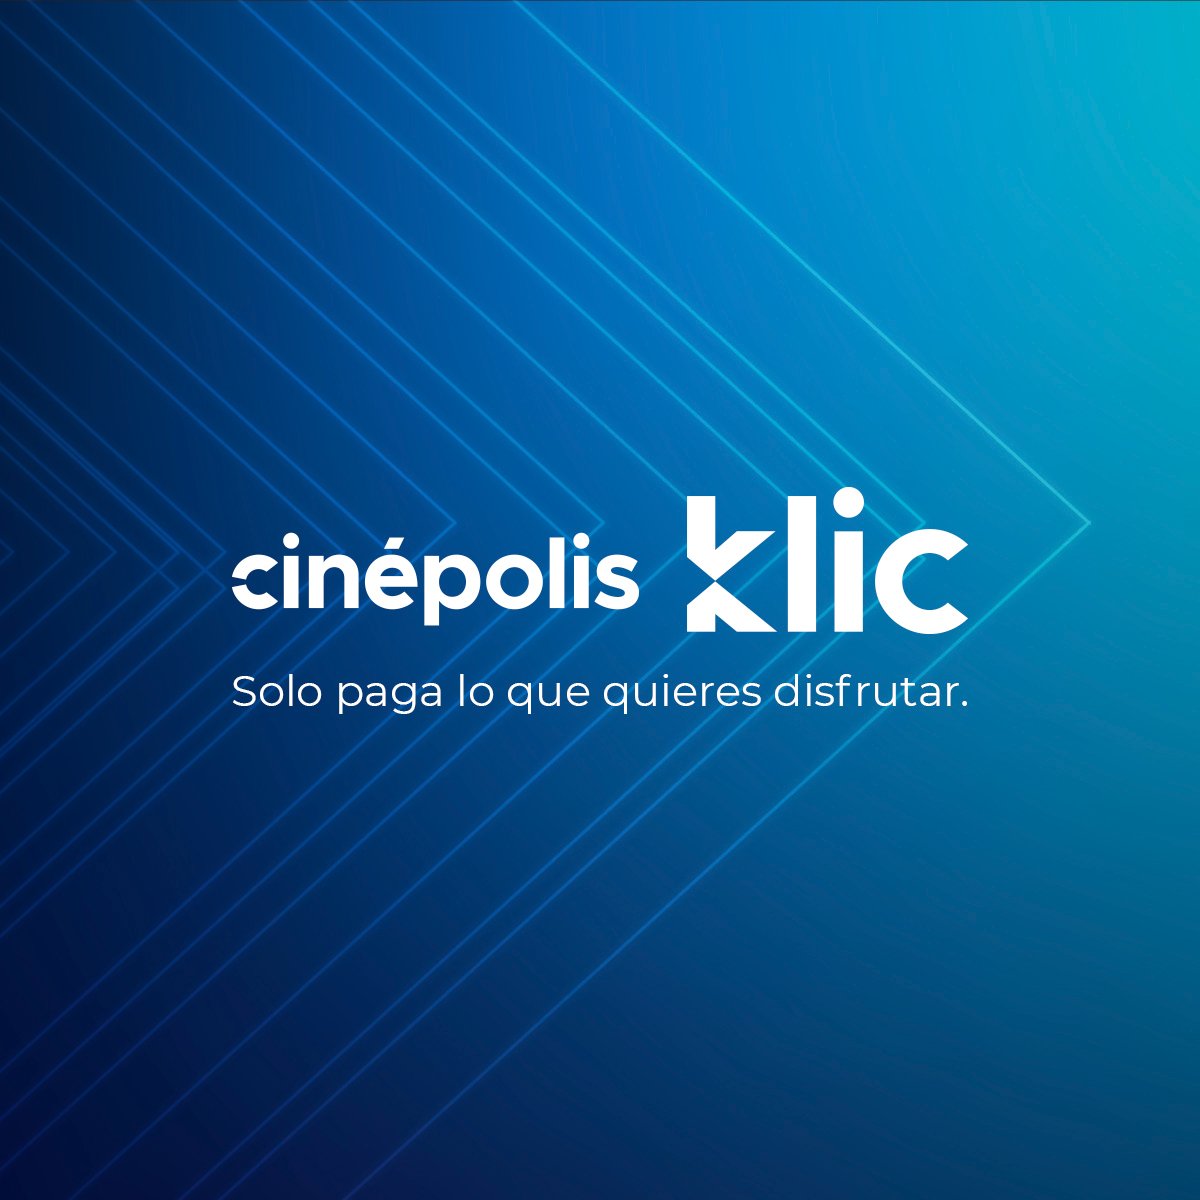 Rentas de regalo y descuentos del 50 por ciento: los beneficios de Cinépolis  Klic este verano - Infobae